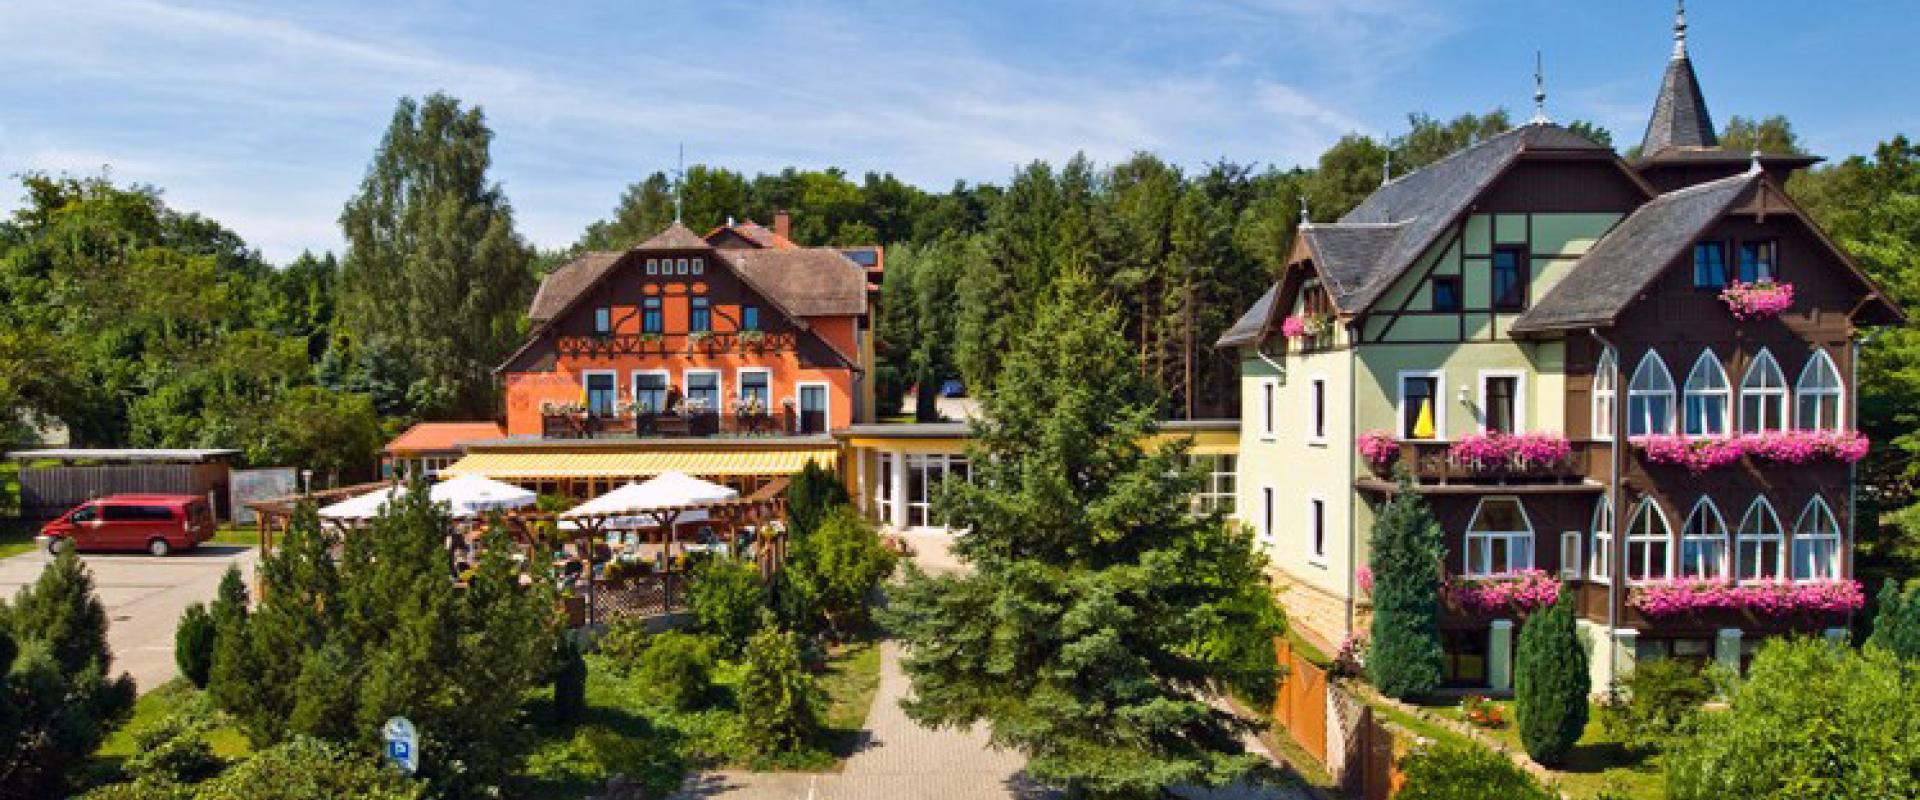 15277 Biker Hotel Margaretenhof in der Sächsischen Schweiz.jpg